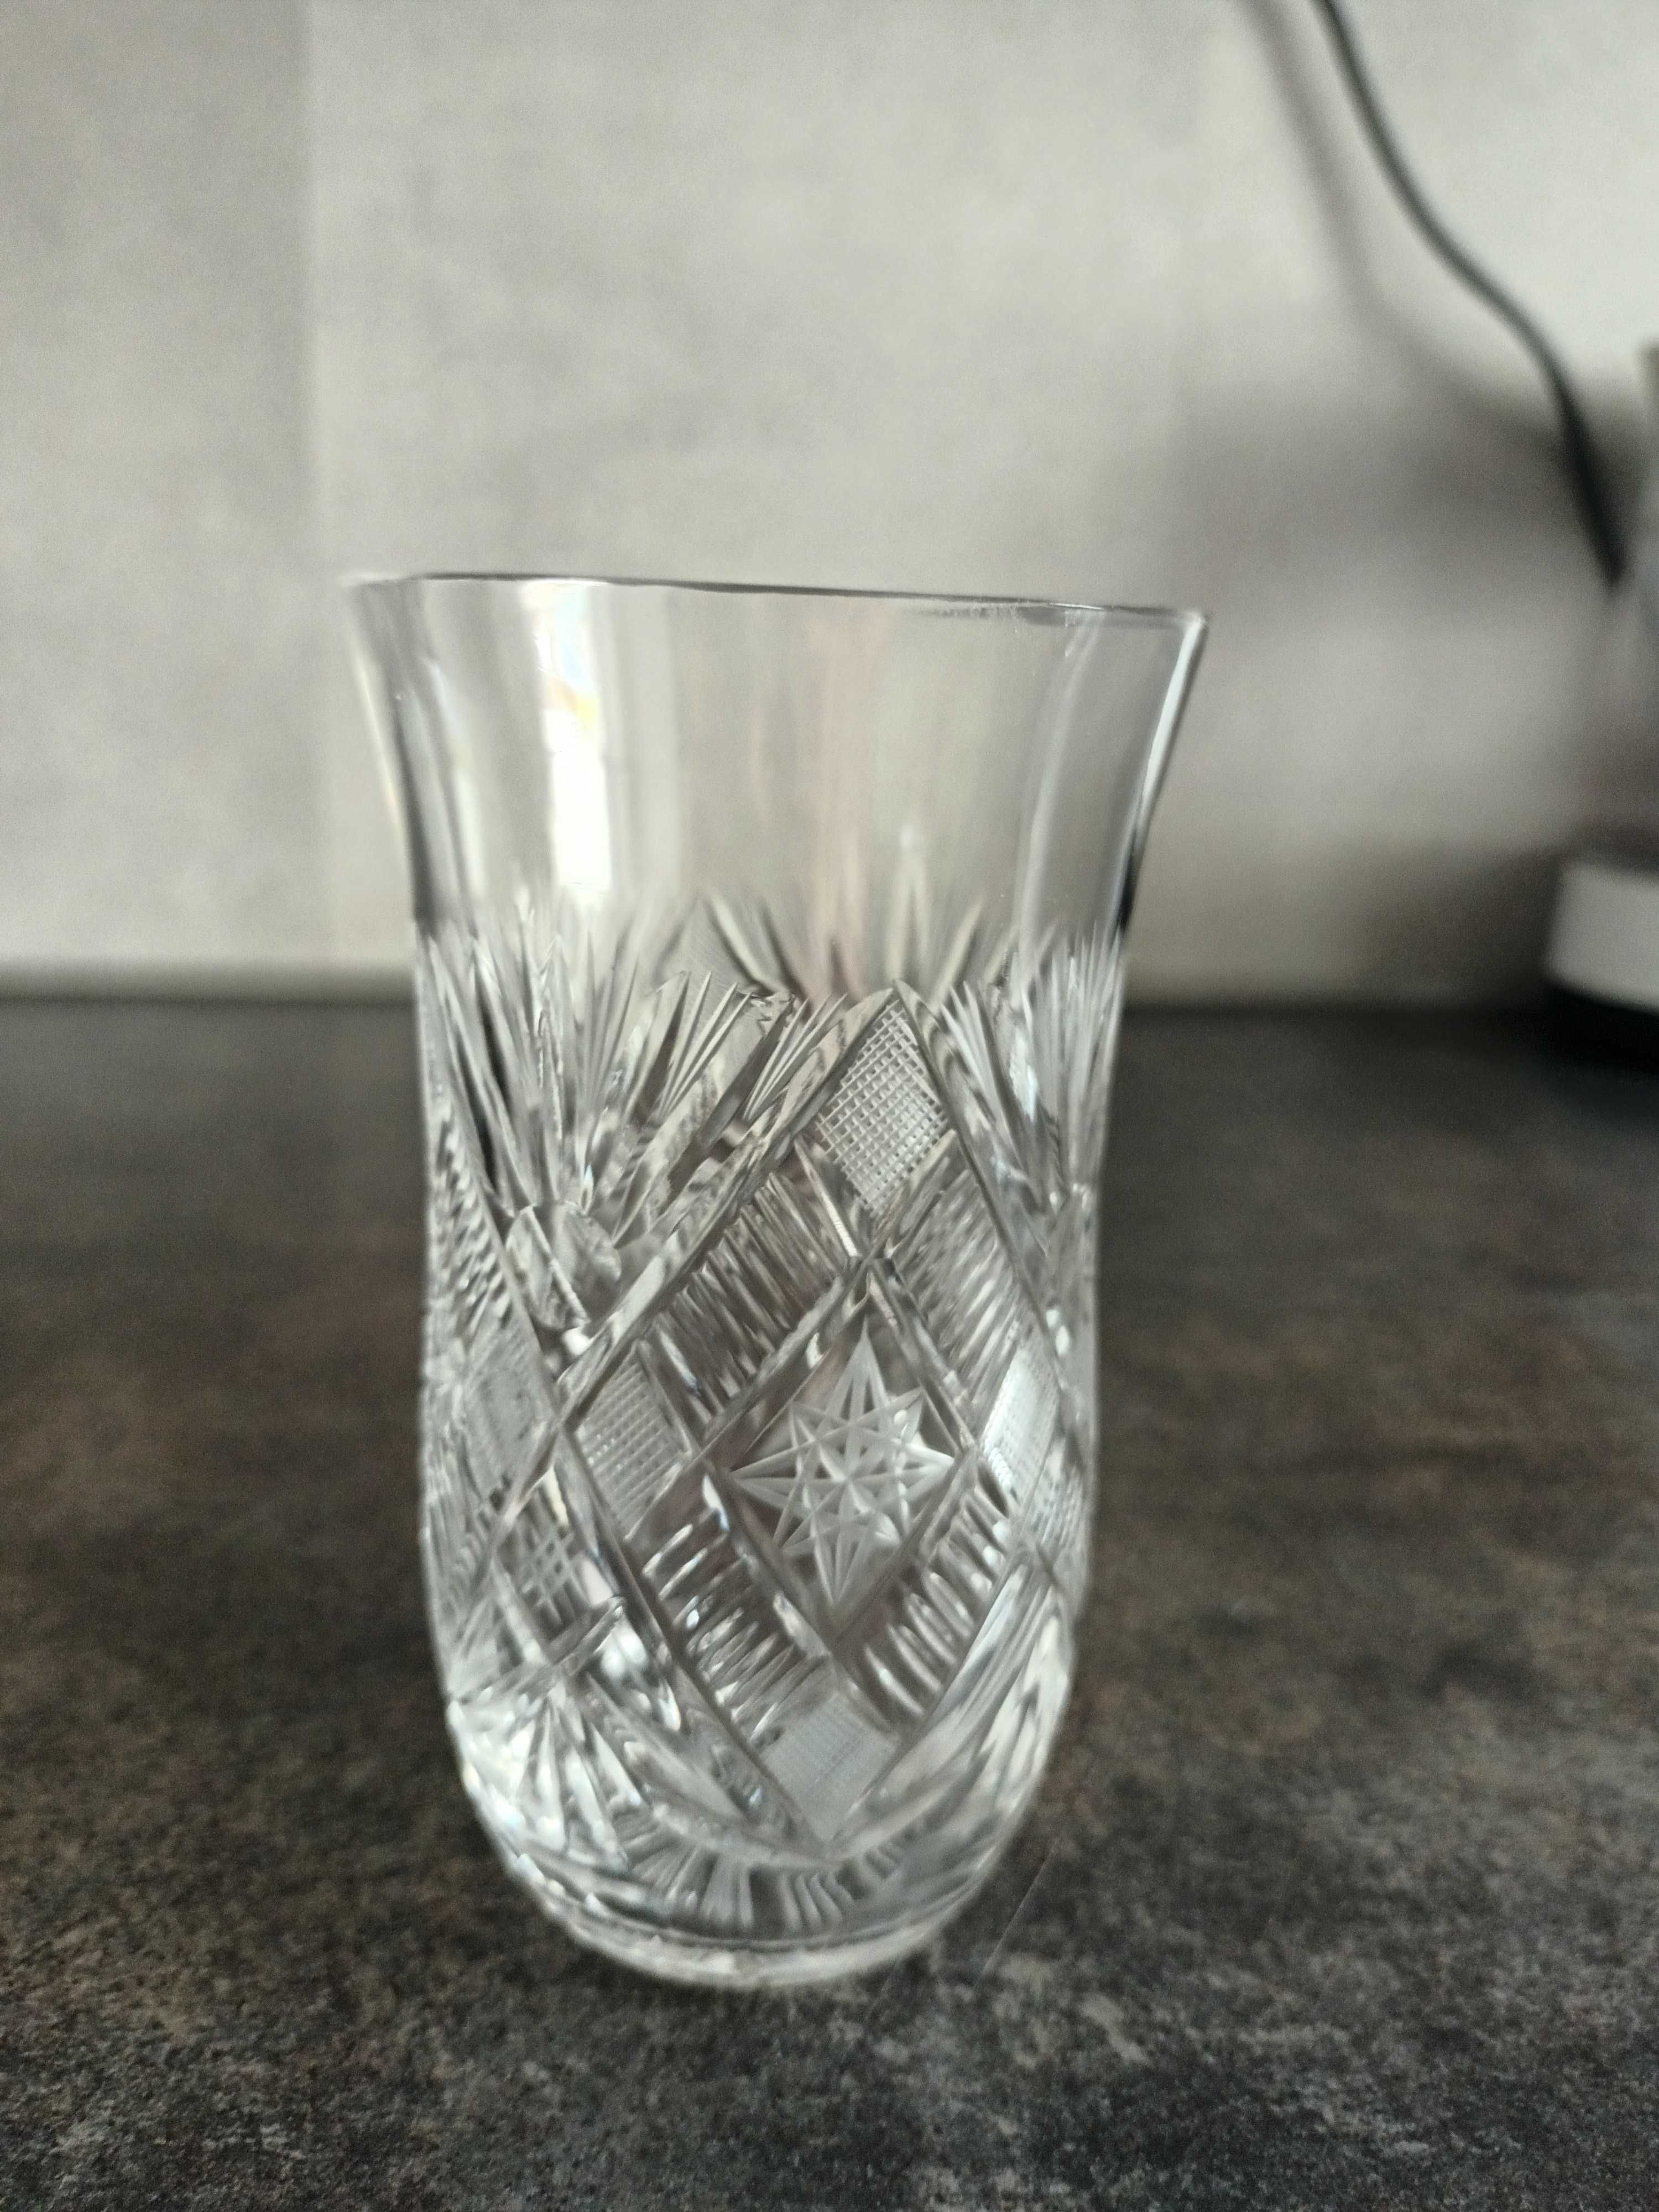 Antyk, kryształ, szklanka lata 30 ub wieku